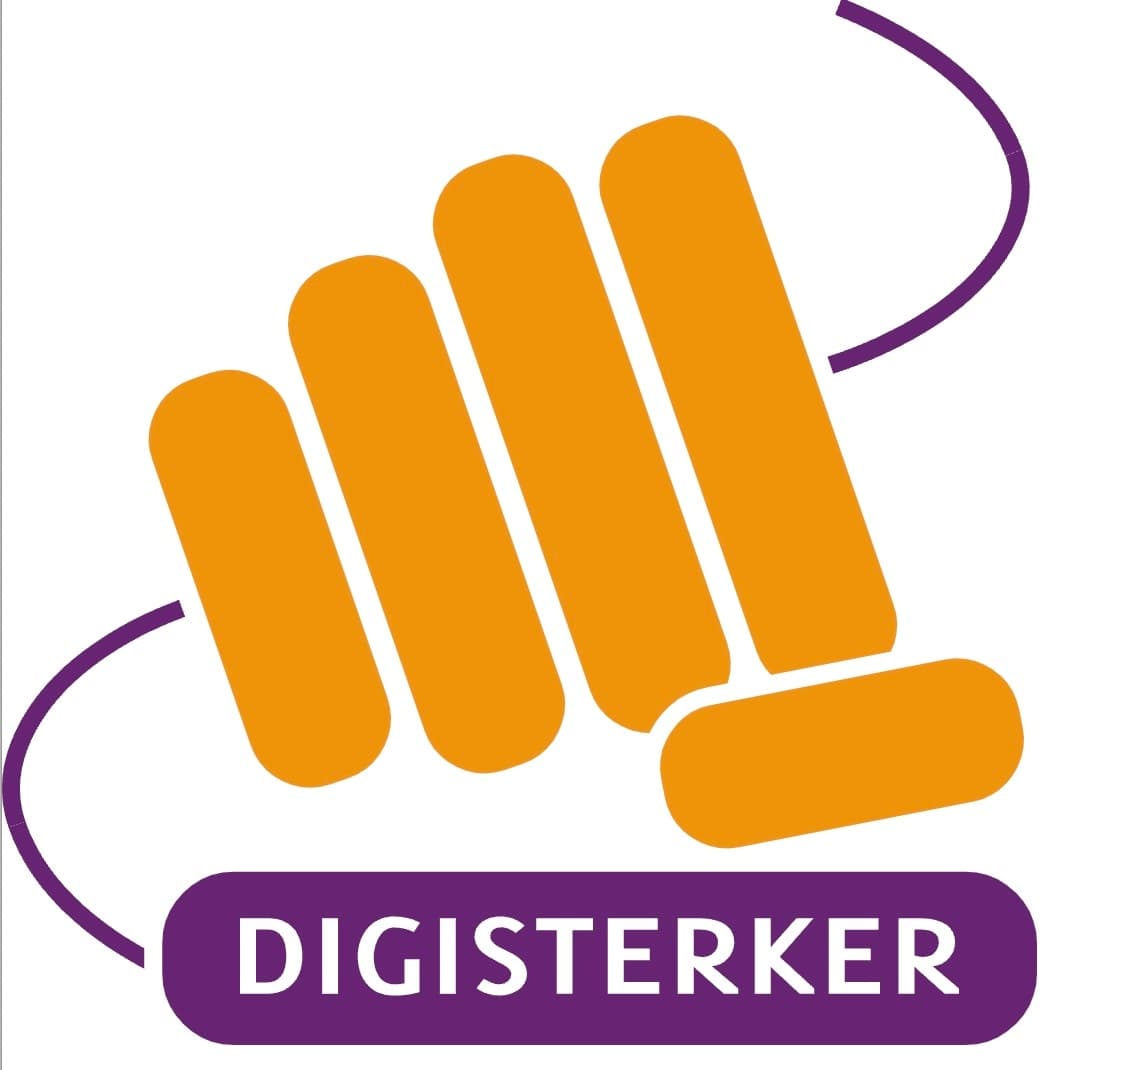 Digisterker logo